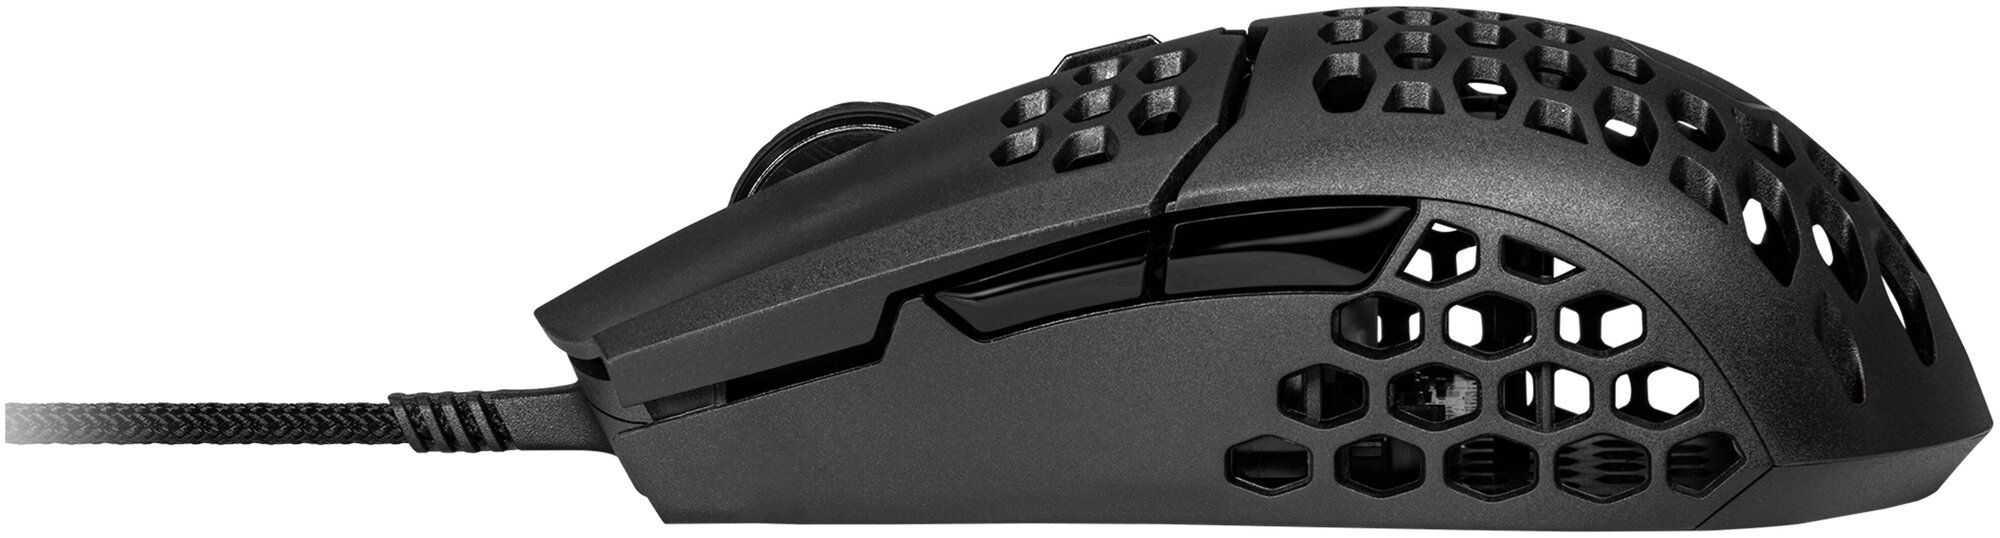 Игровая мышь Cooler Master MM710, черный матовый